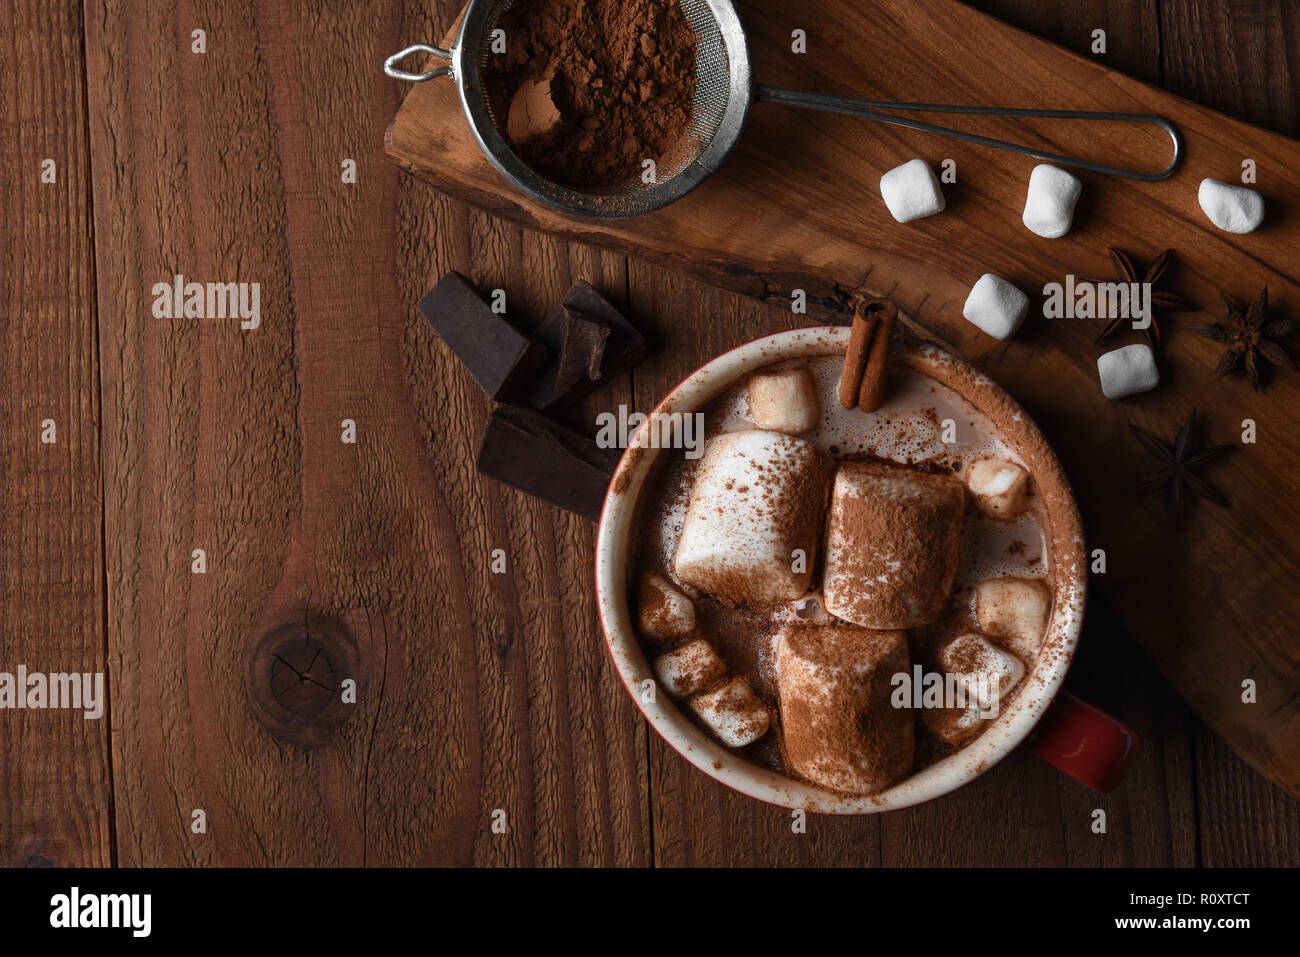 Fotografía cenital de una gran taza de chocolate caliente con malvaviscos sobre una mesa de cocina de madera rústica, con espacio de copia. Foto de stock